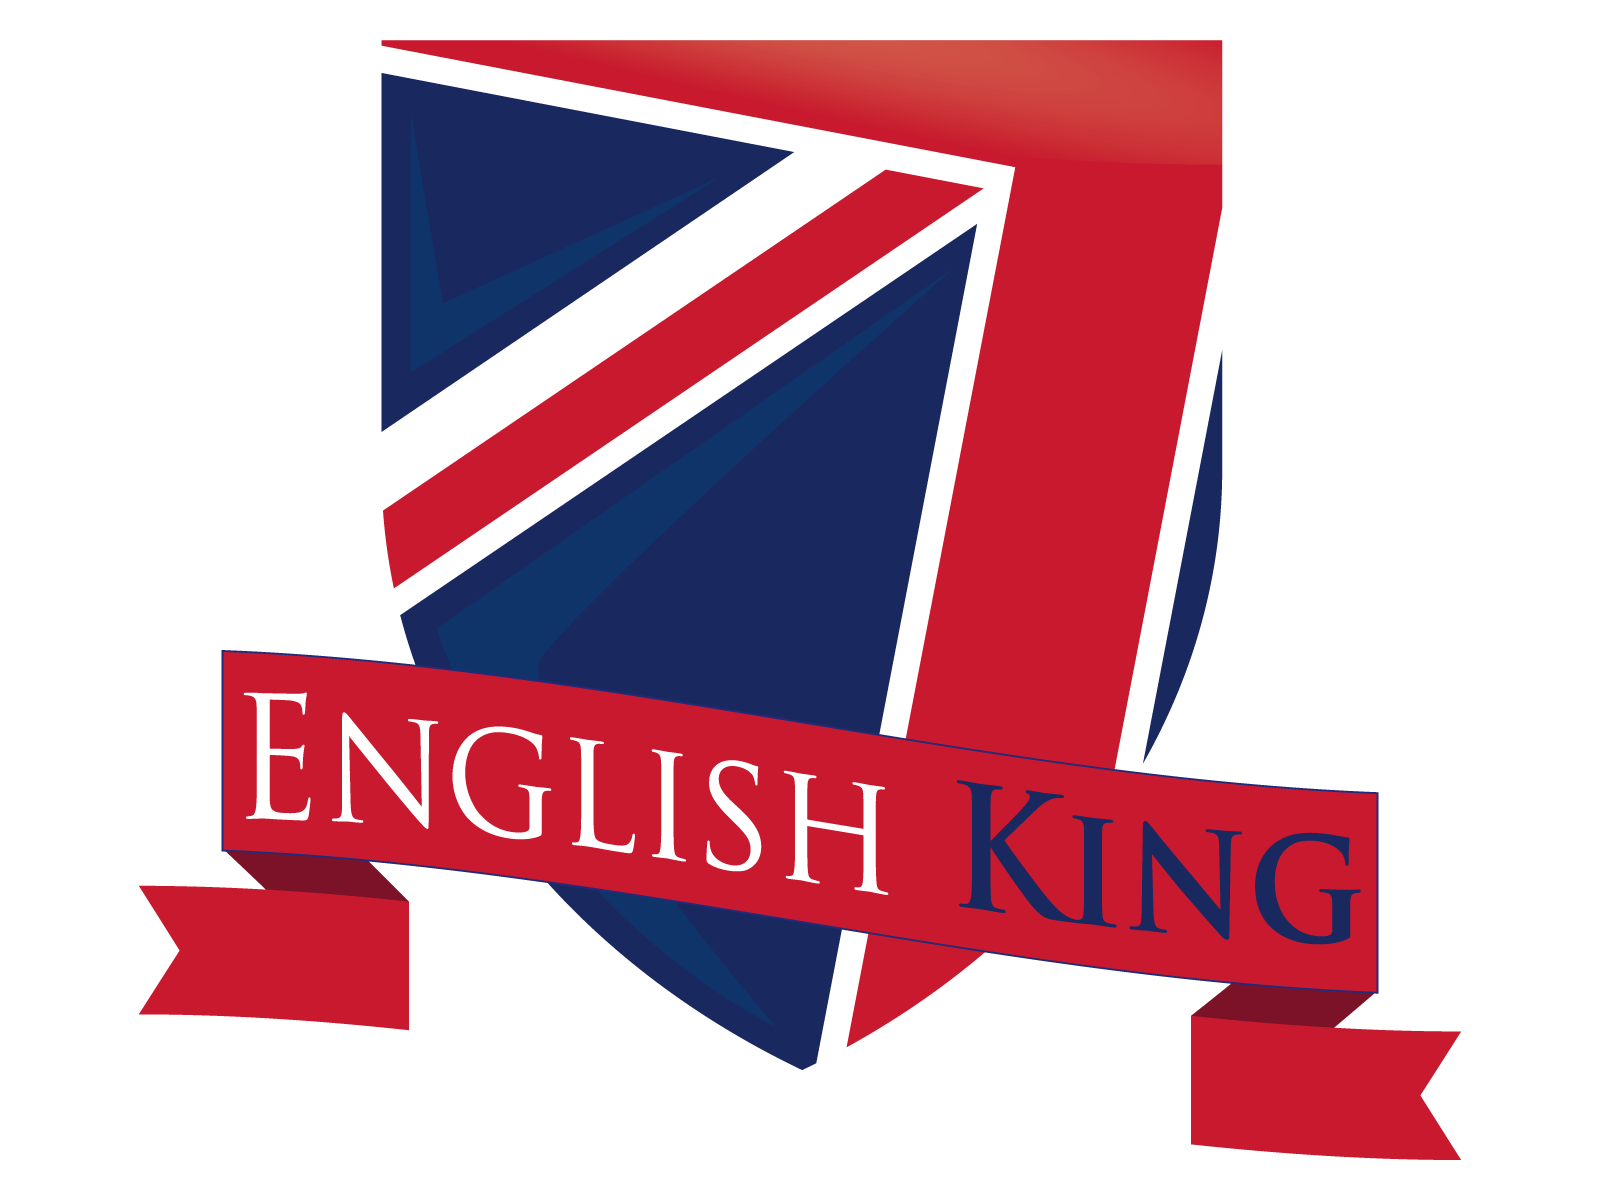 English King